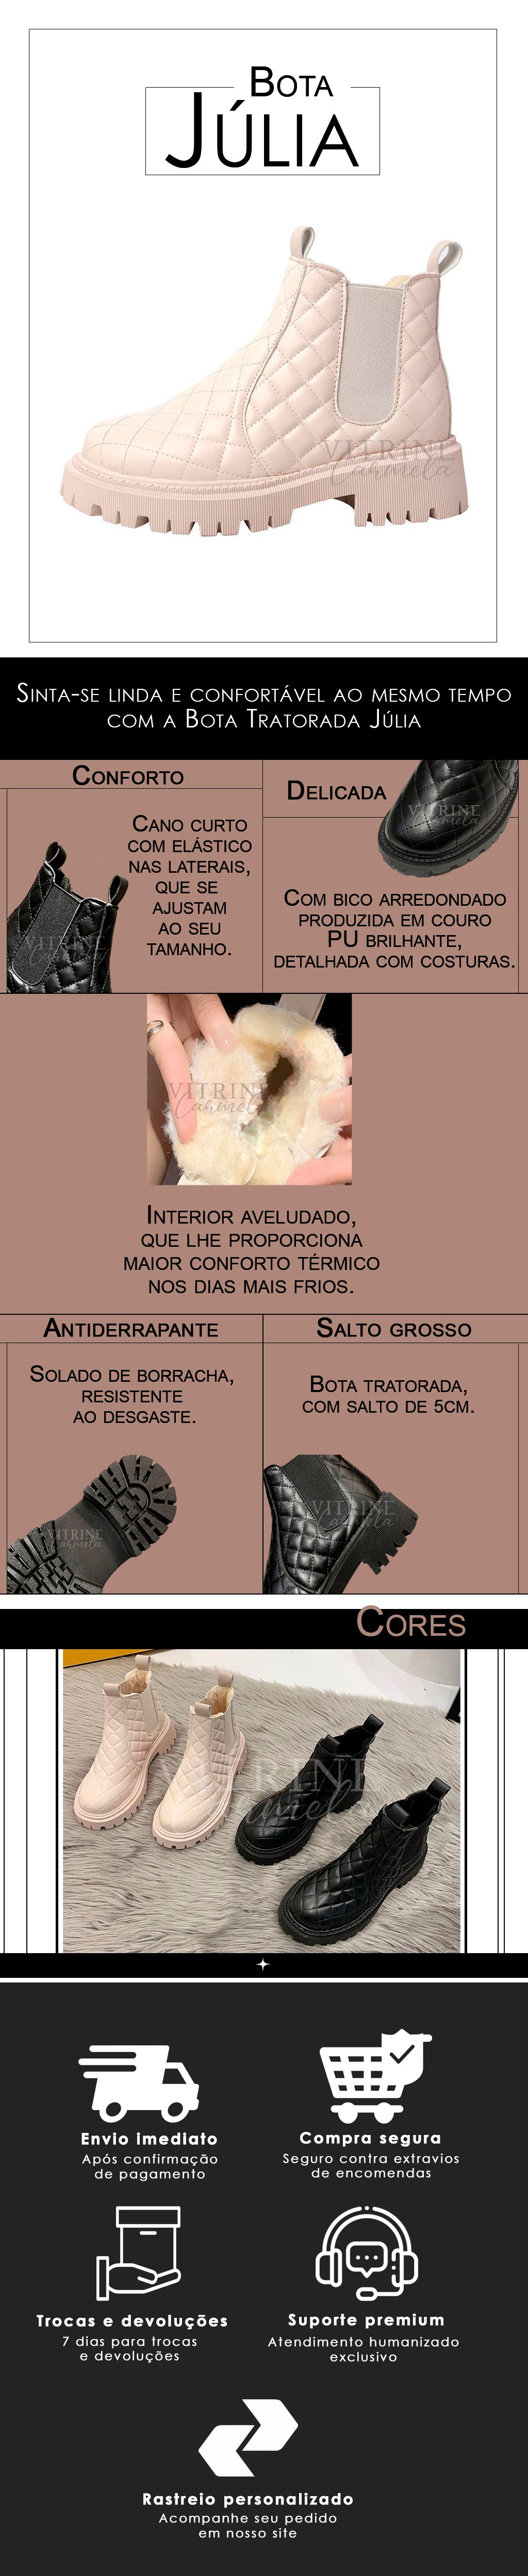 Sapato-feminino-em-promoção-com-frete-grátis-na-vitrine-carmela-BotaJúlia